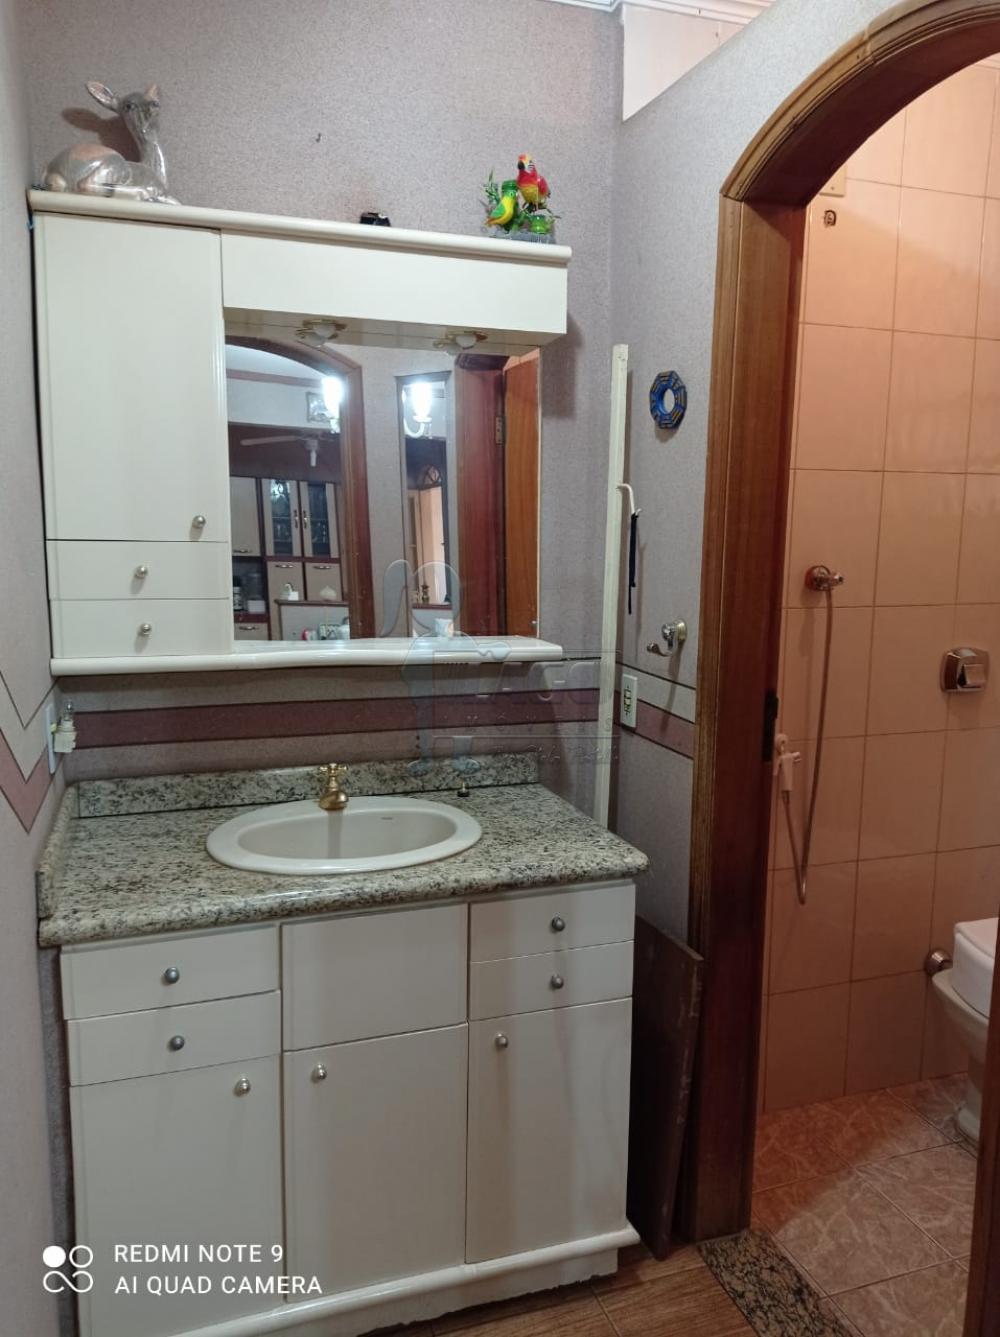 Comprar Casas / Padrão em Ribeirão Preto R$ 265.000,00 - Foto 11